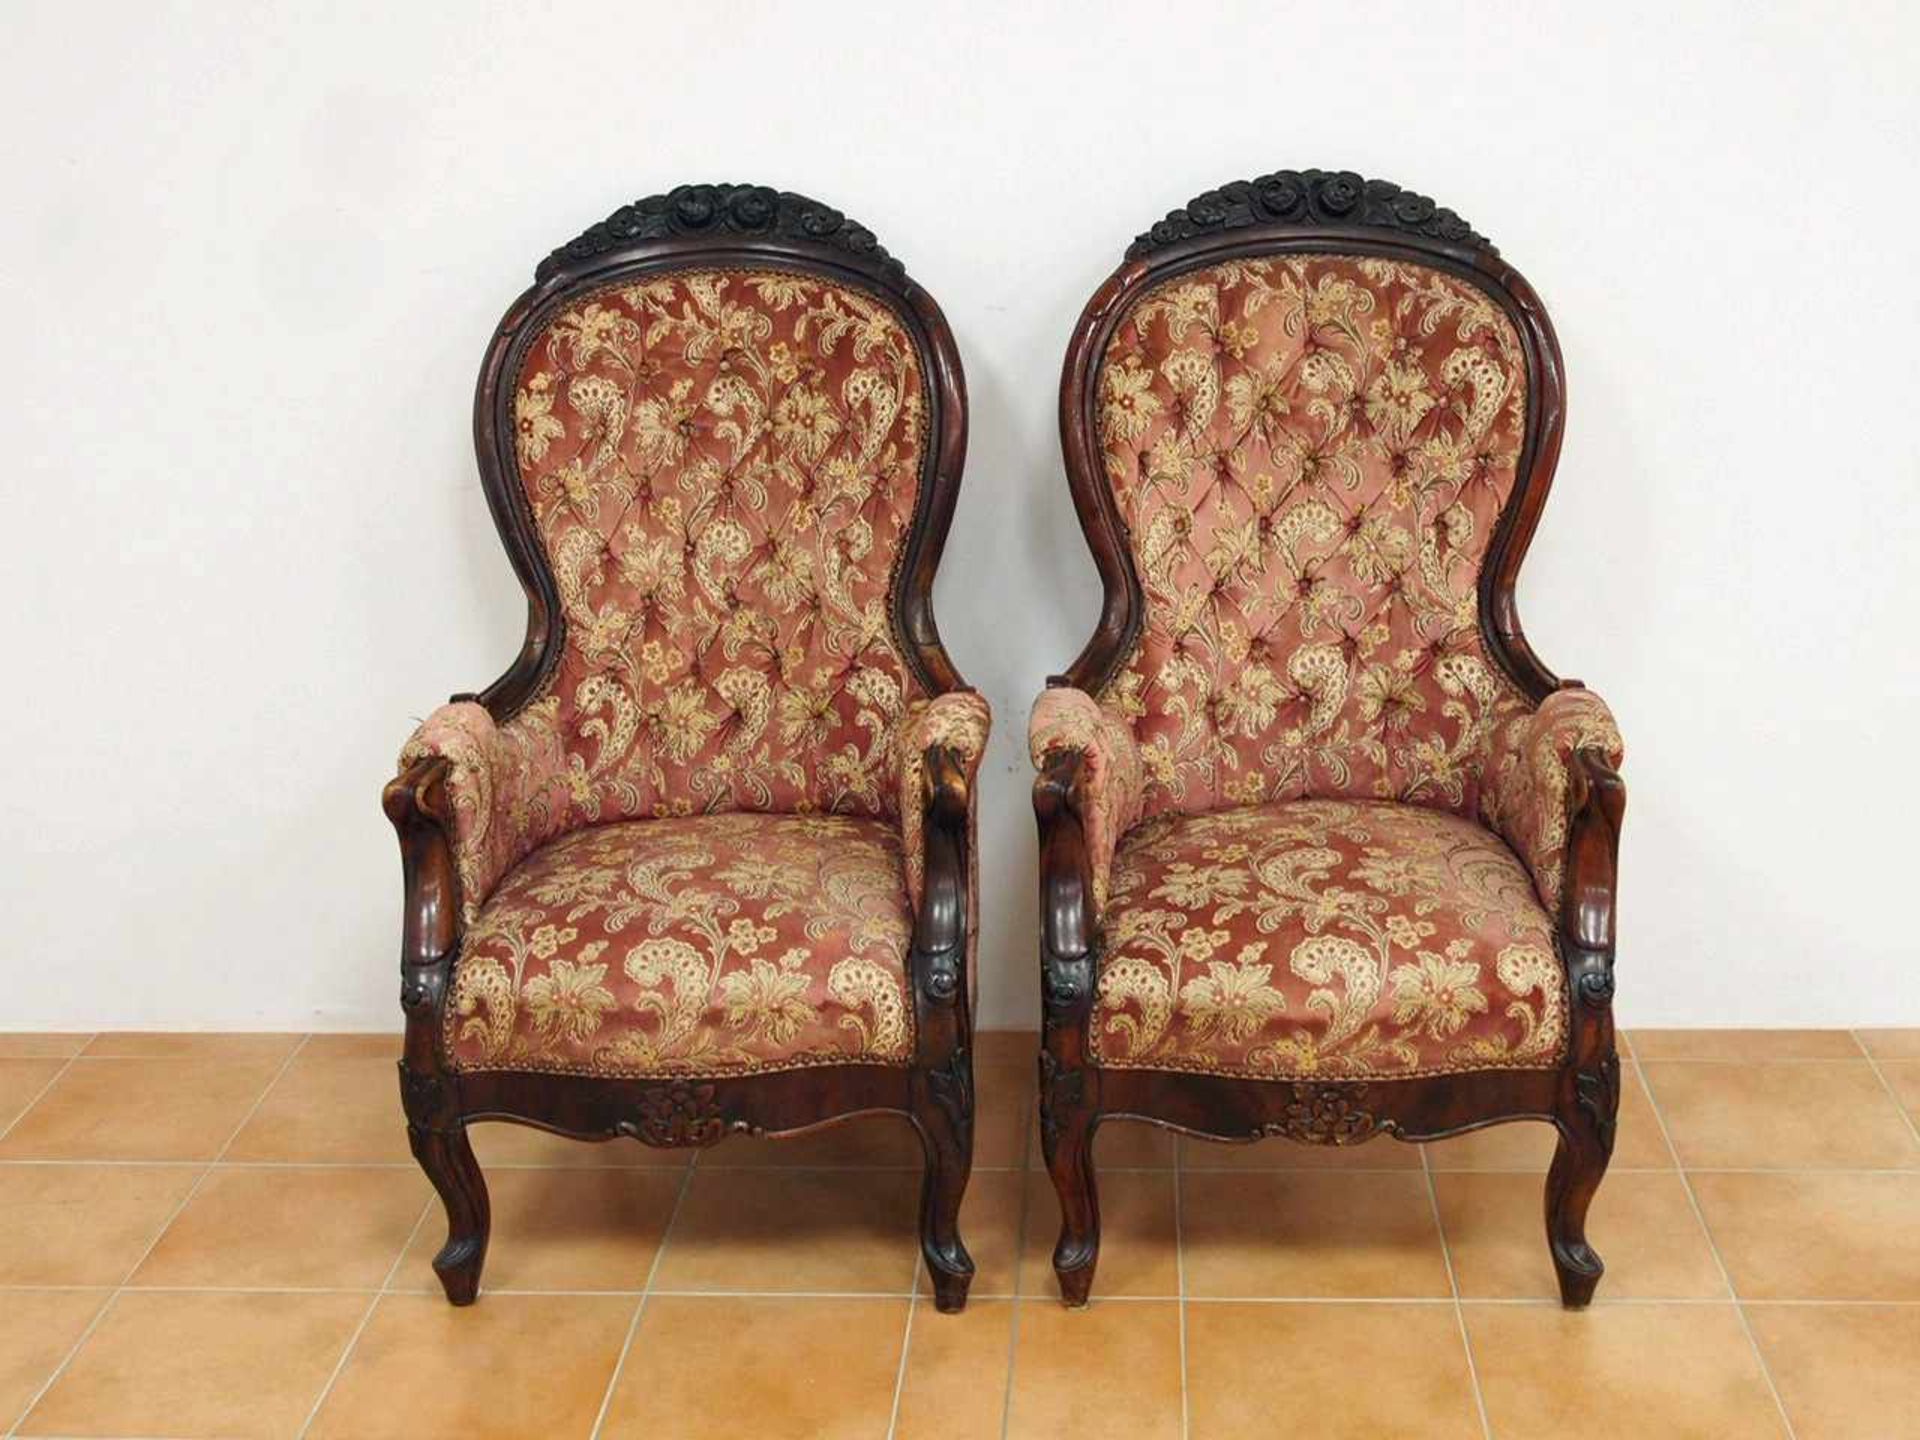 Paar ArmlehnsesselEiche, gebeizt, Frankreich 19. Jahrhundert, Höhe 118 cm, Sitzhöhe 42 cm- - -25.